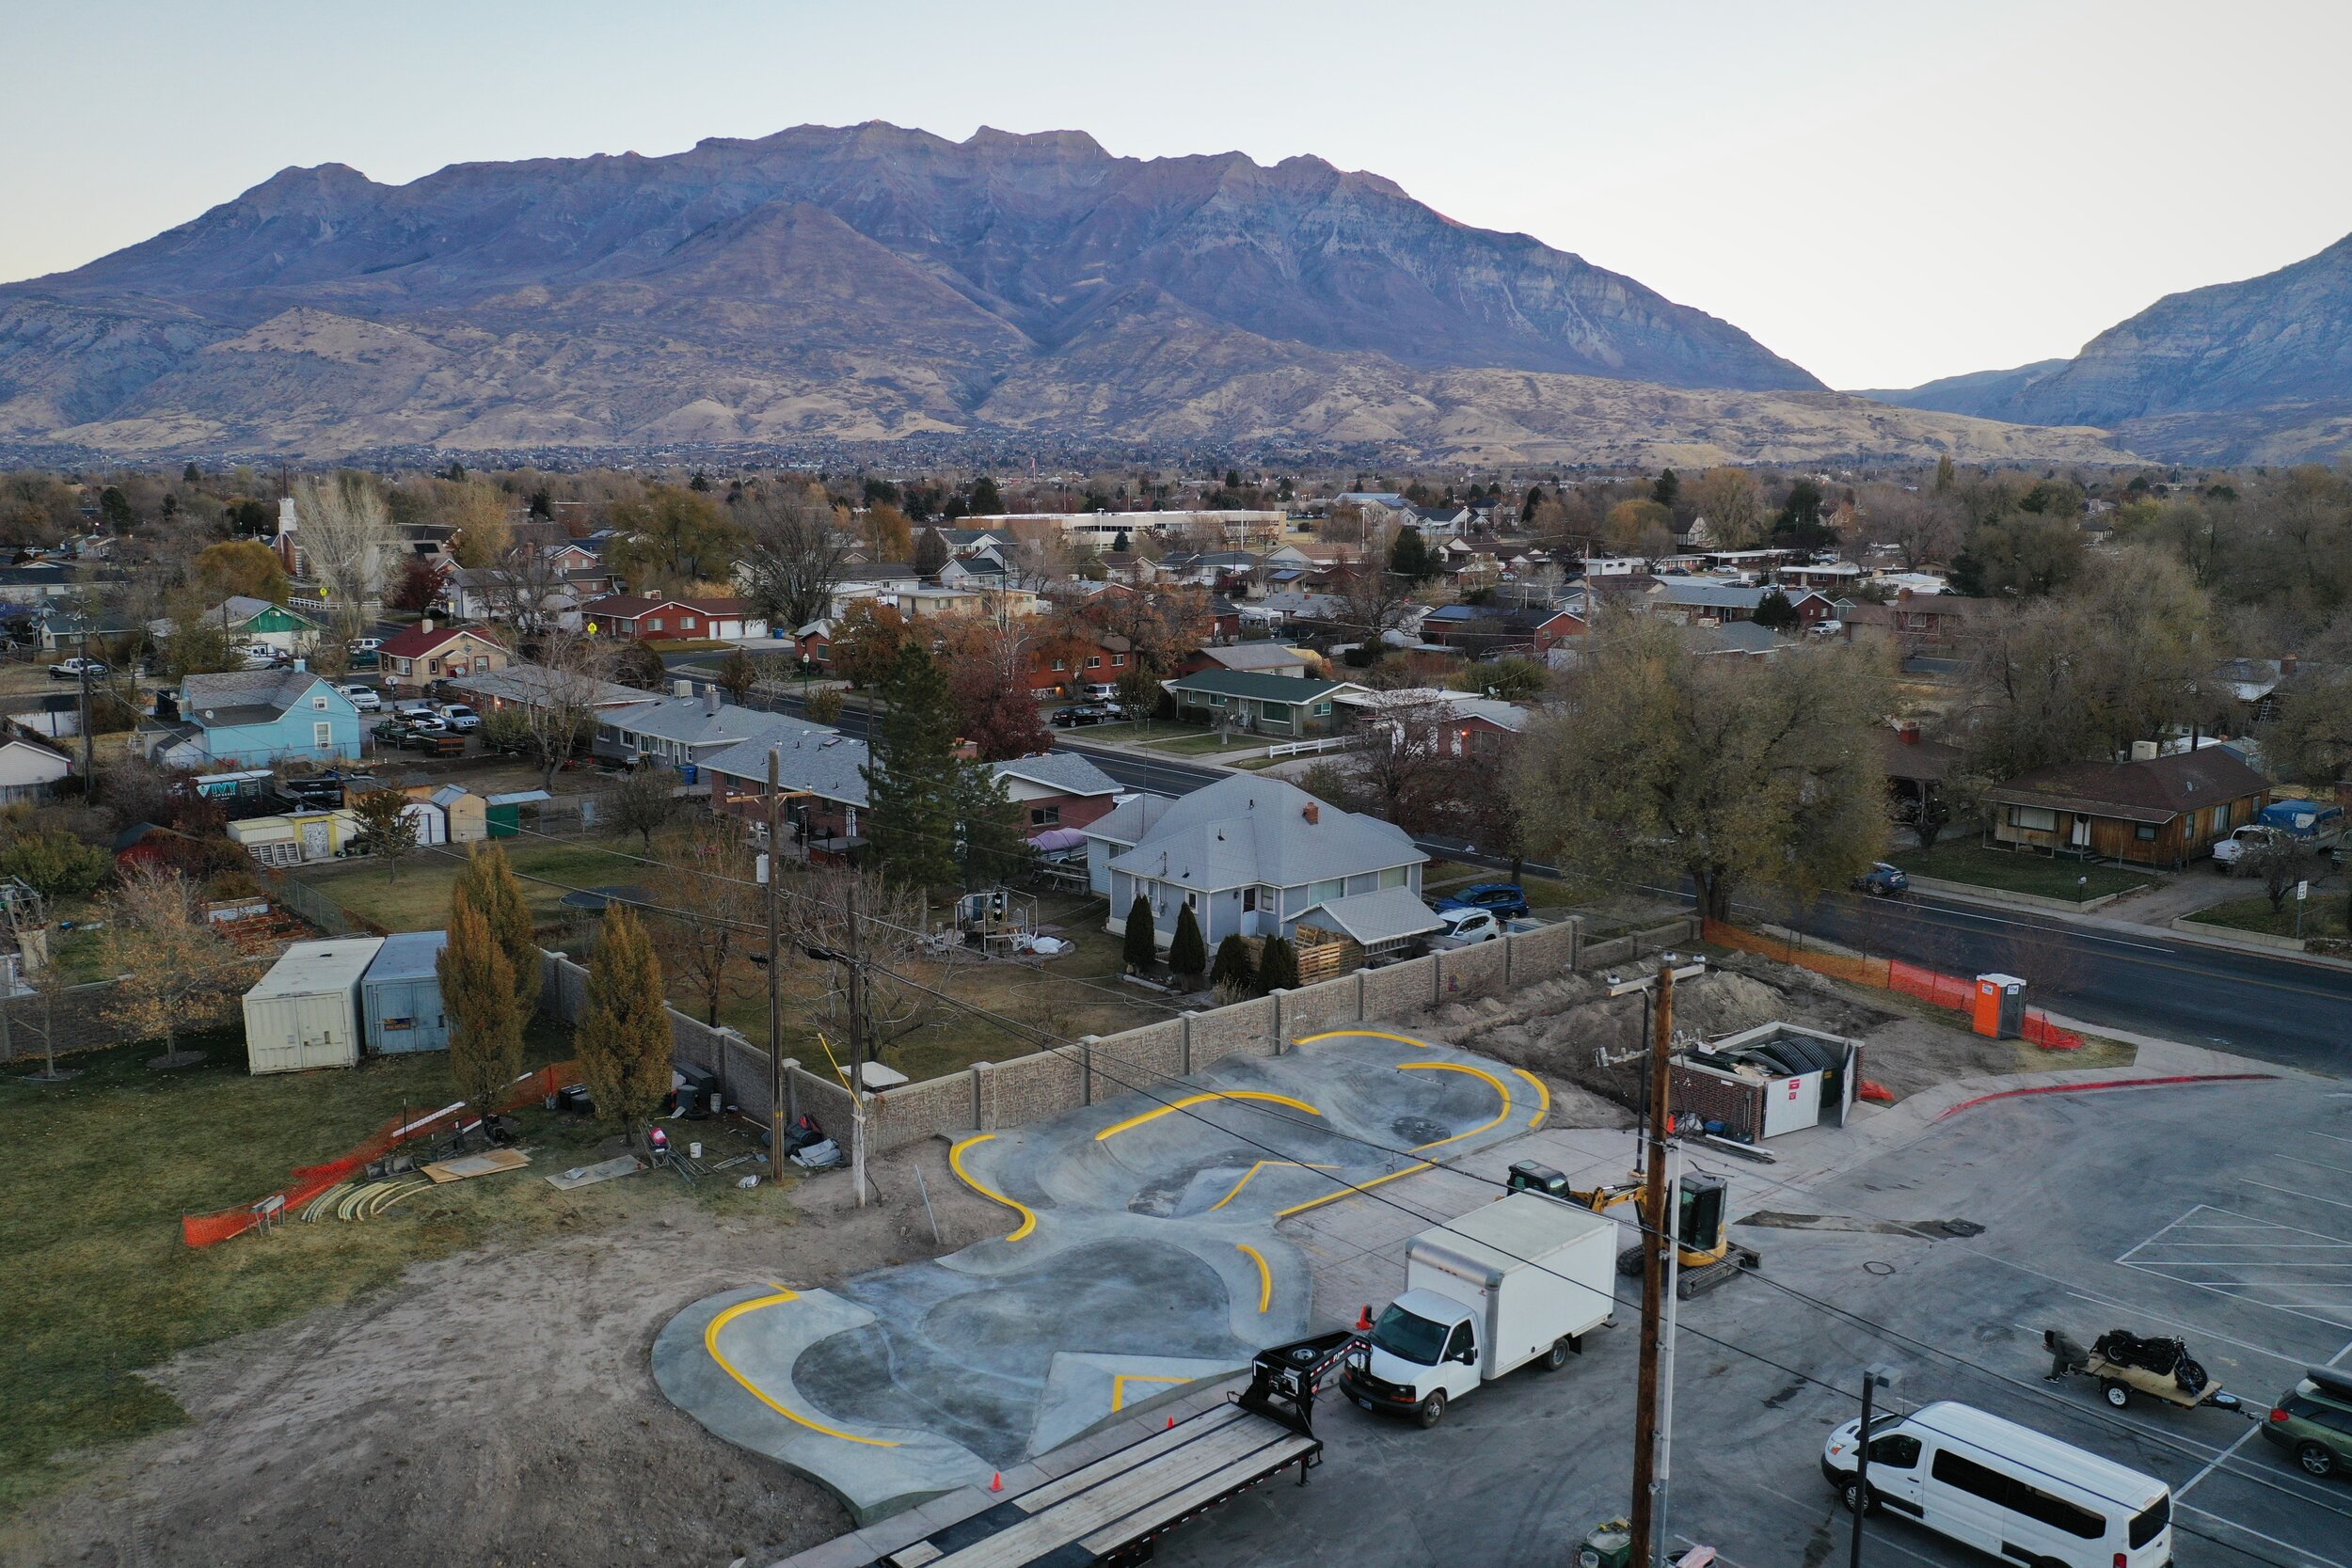 Mini snake 🐍 run / skatepark. Private Utah spot #miniskatepark